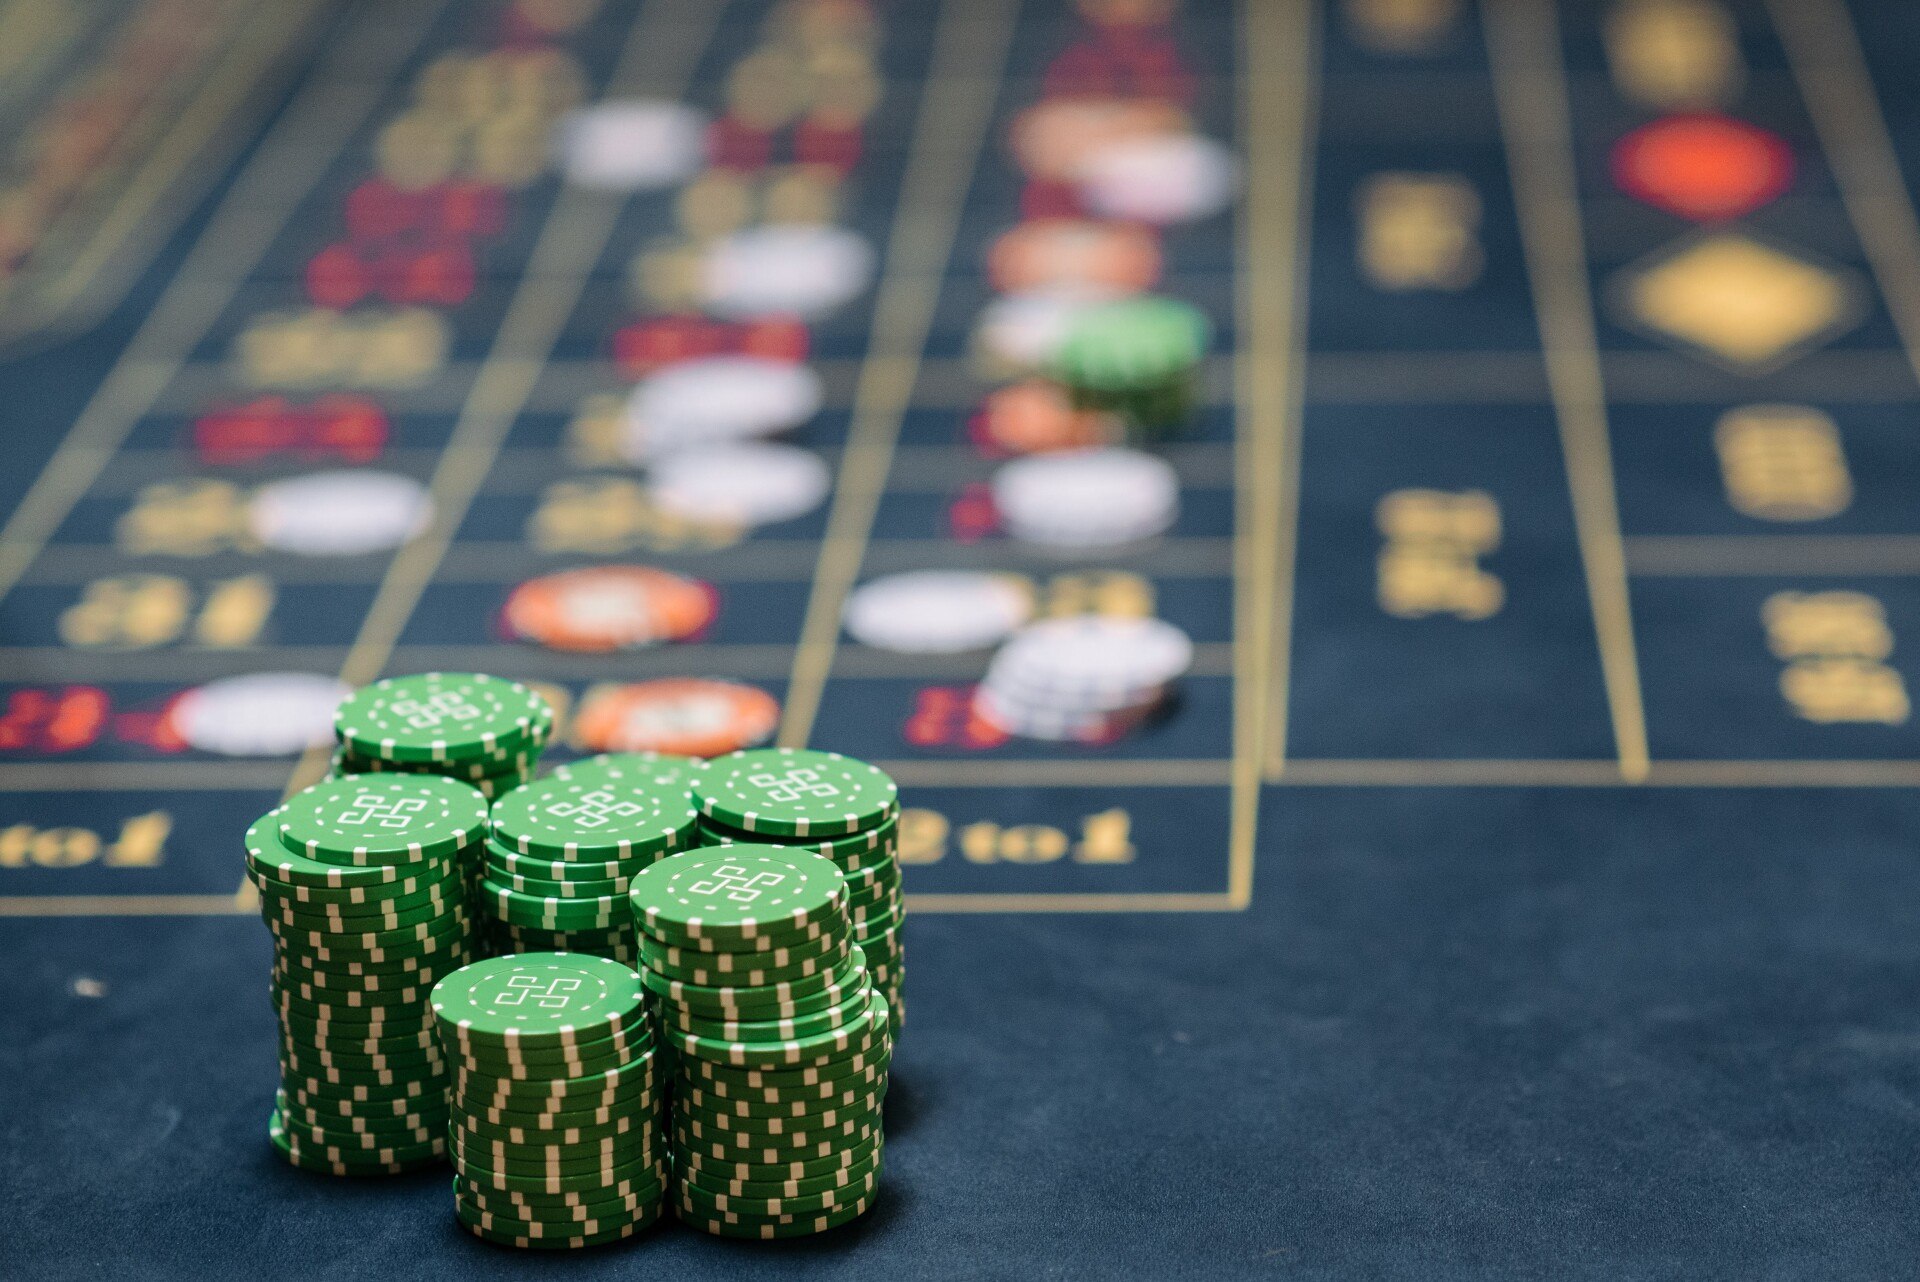 Jak funguje live kasino a jak se liší od běžného online kasina?